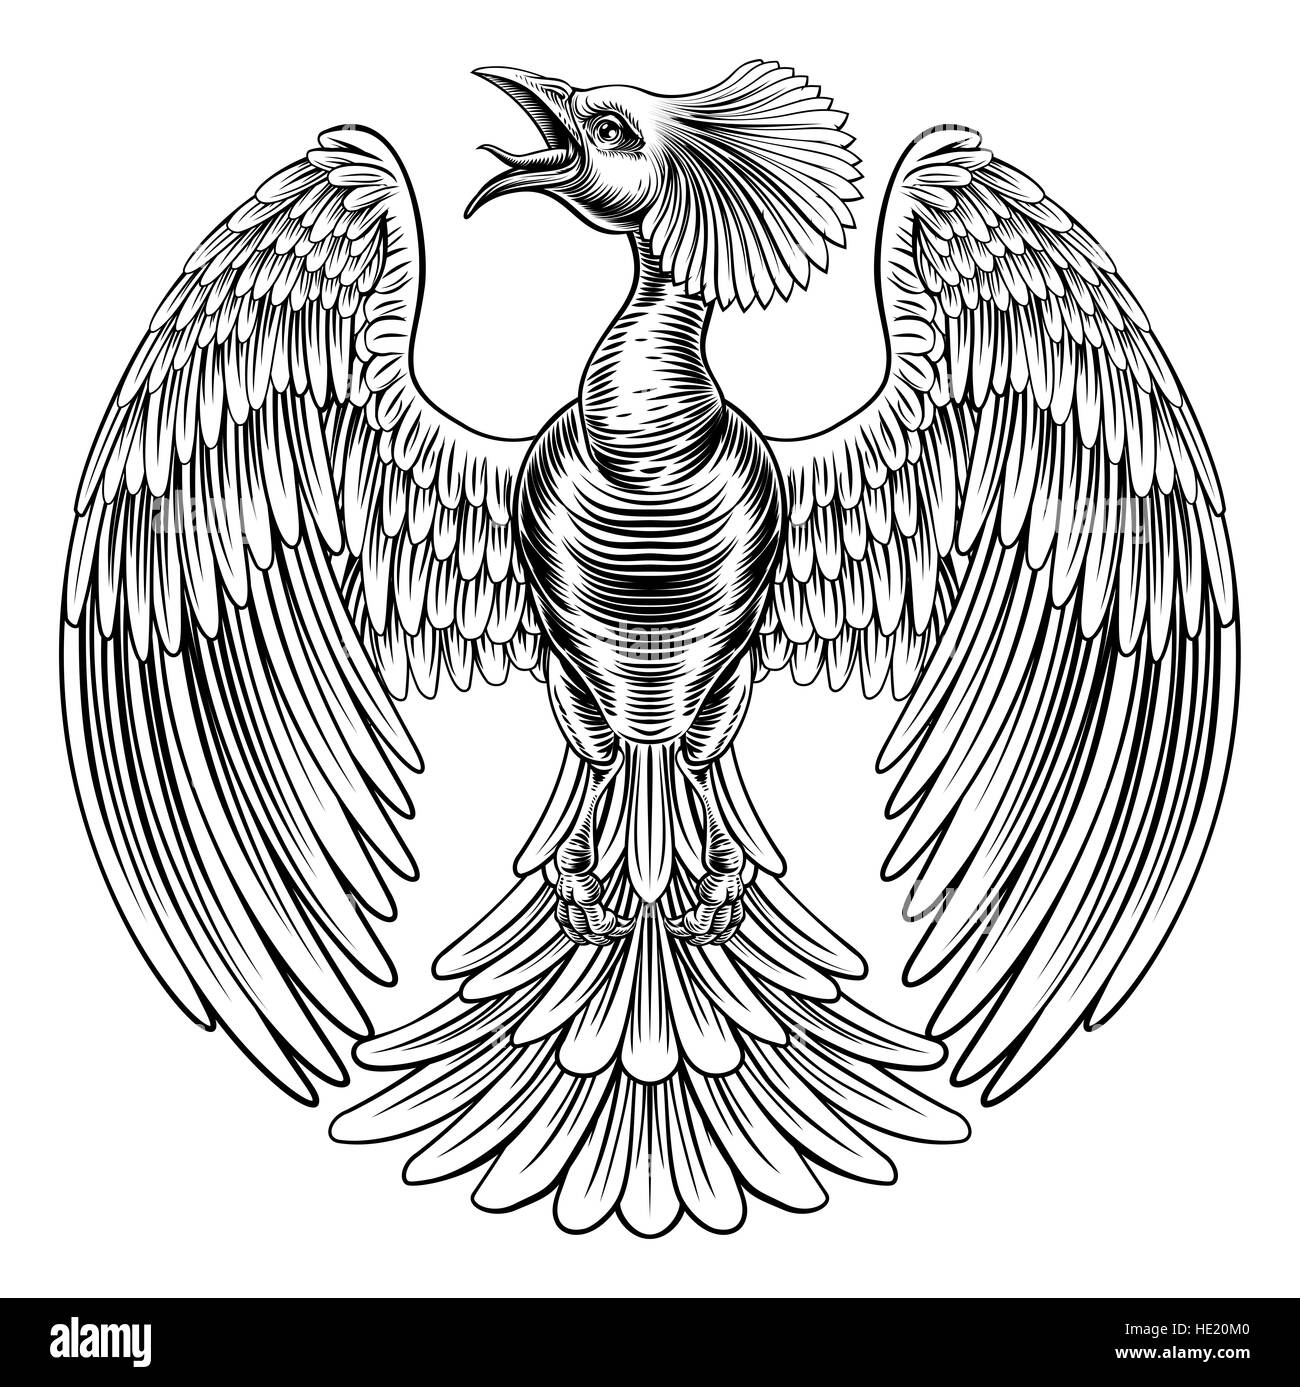 Une illustration originale d'un oiseau de feu phoenix ou peacock dans un vintage retro style gravure gravure sur bois gravé Banque D'Images